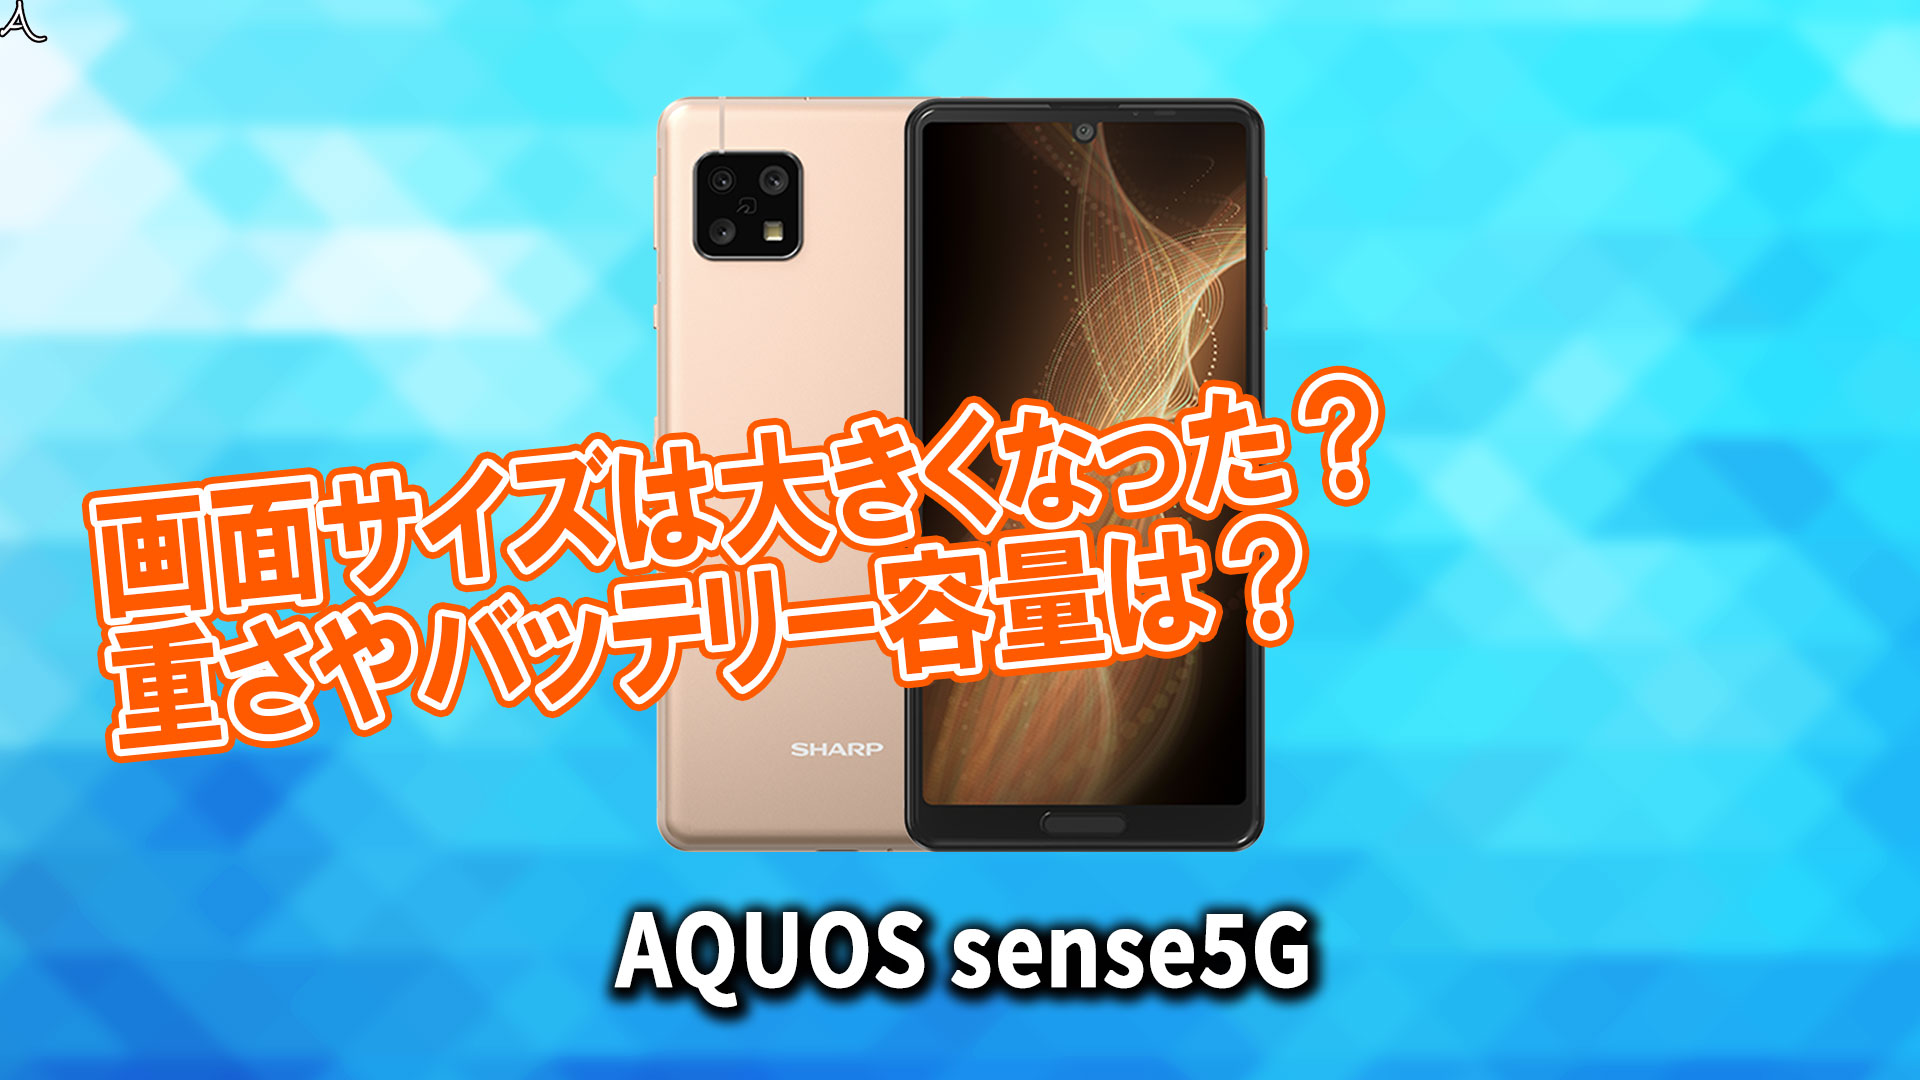 「AQUOS sense5G」のサイズや重さを他のスマホと細かく比較